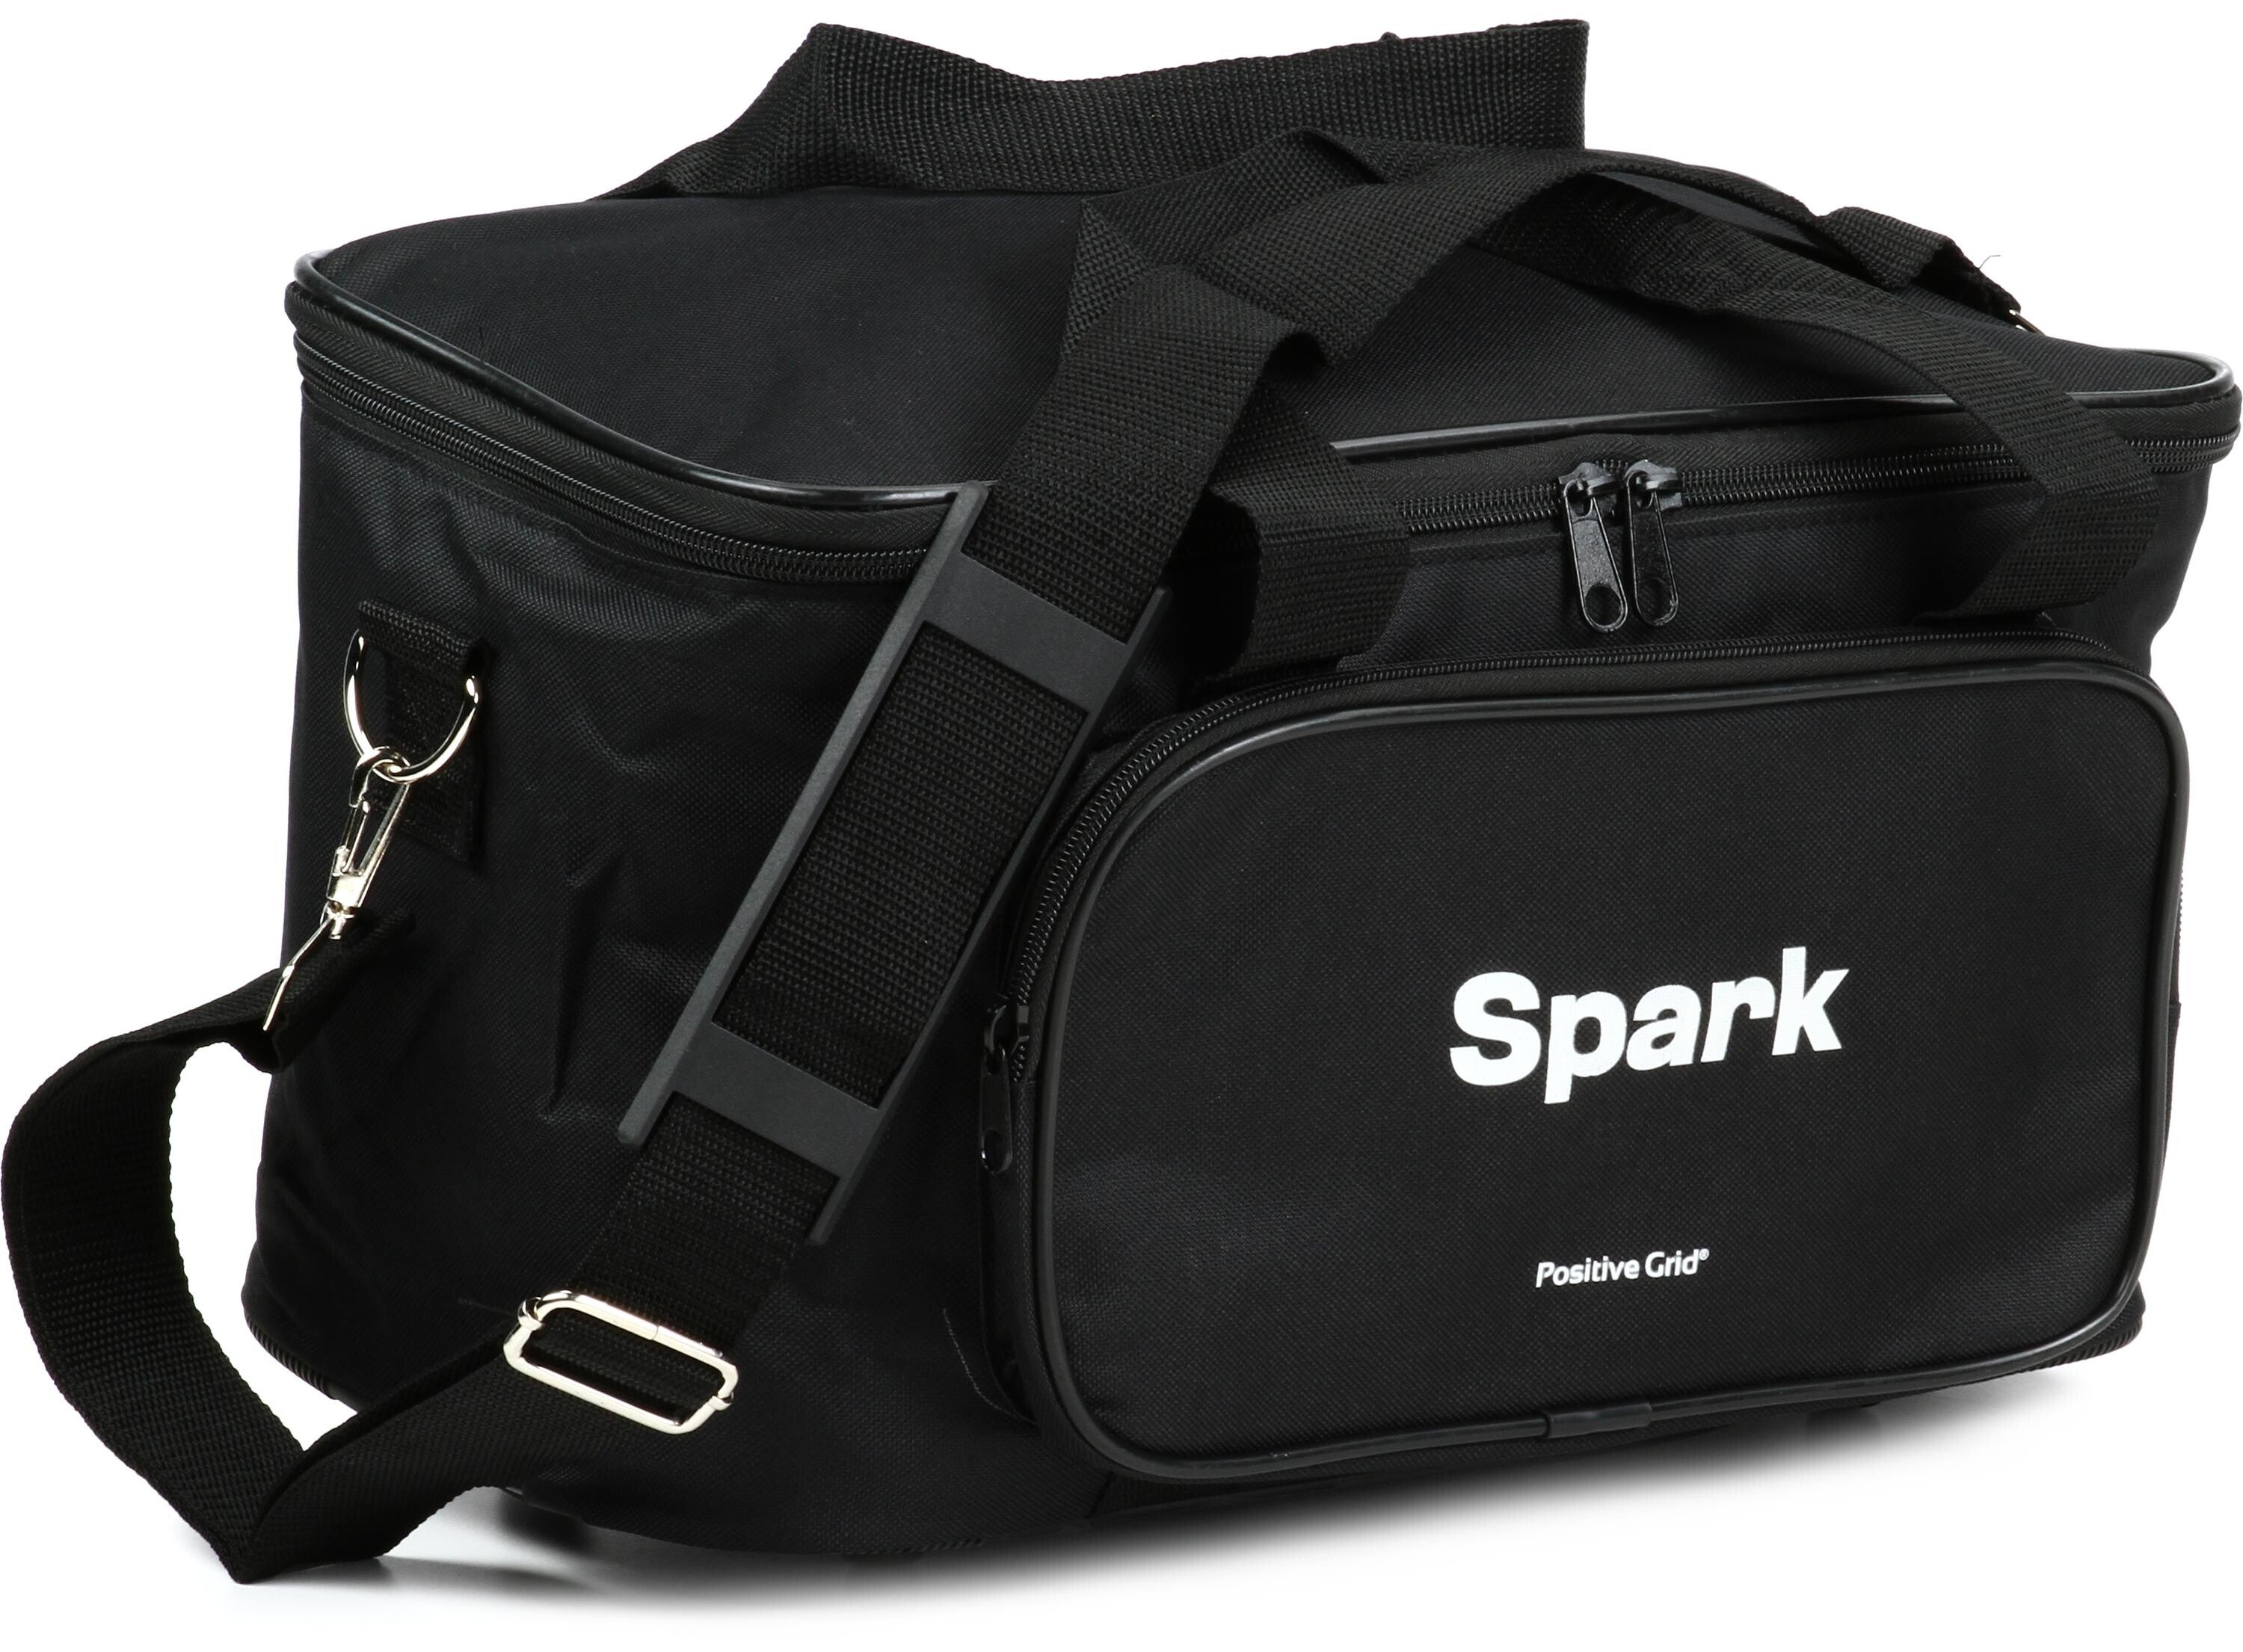 Positive Grid Carry Bag for Spark Practice Amp - Black